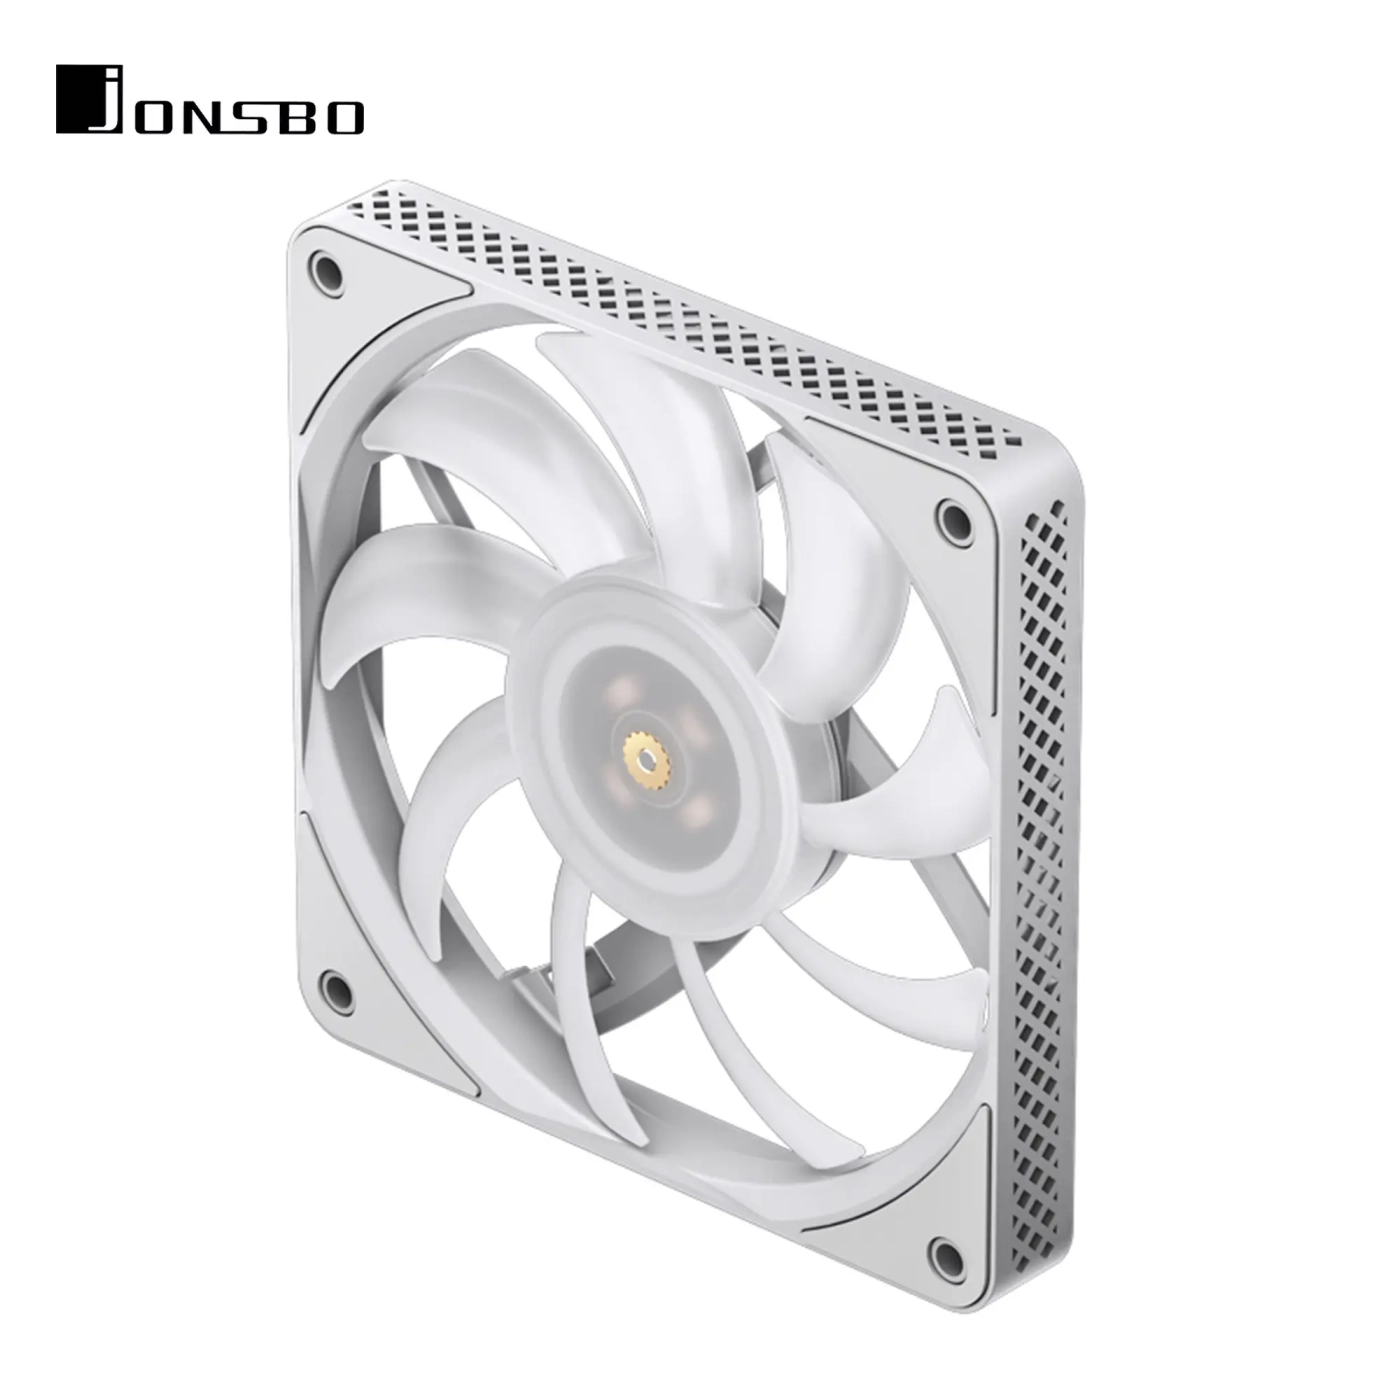 Купить Вентилятор JONSBO HF1215 White ARGB (120mm, 700-1800RPM, 29.7dB, 4pin+LED 3pin) - фото 5